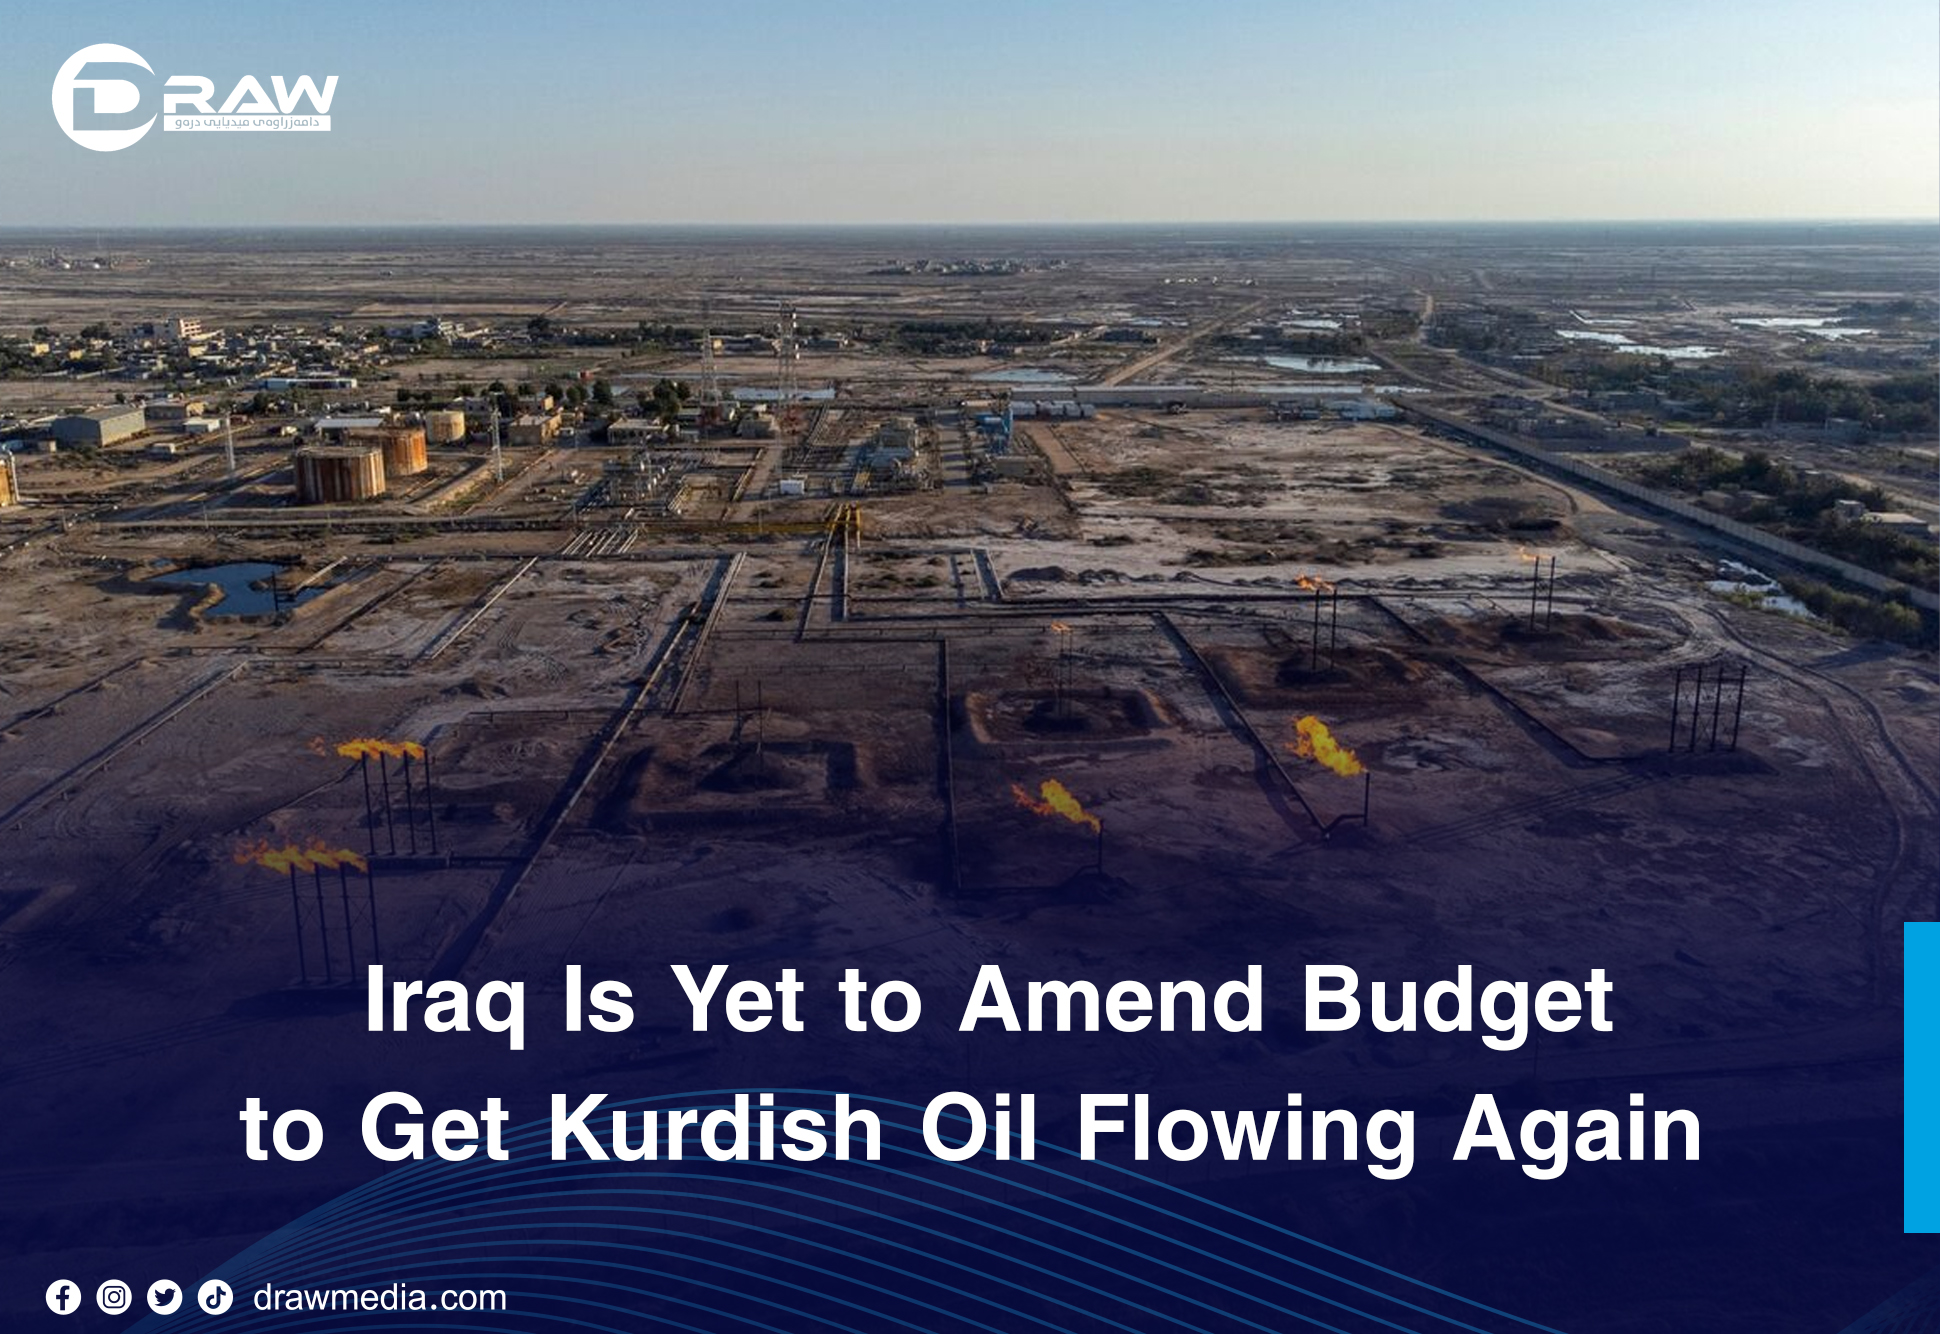 DrawMedia.net / Iraq Is Yet to Amend Budget to Get Kurdish Oil Flowing Again